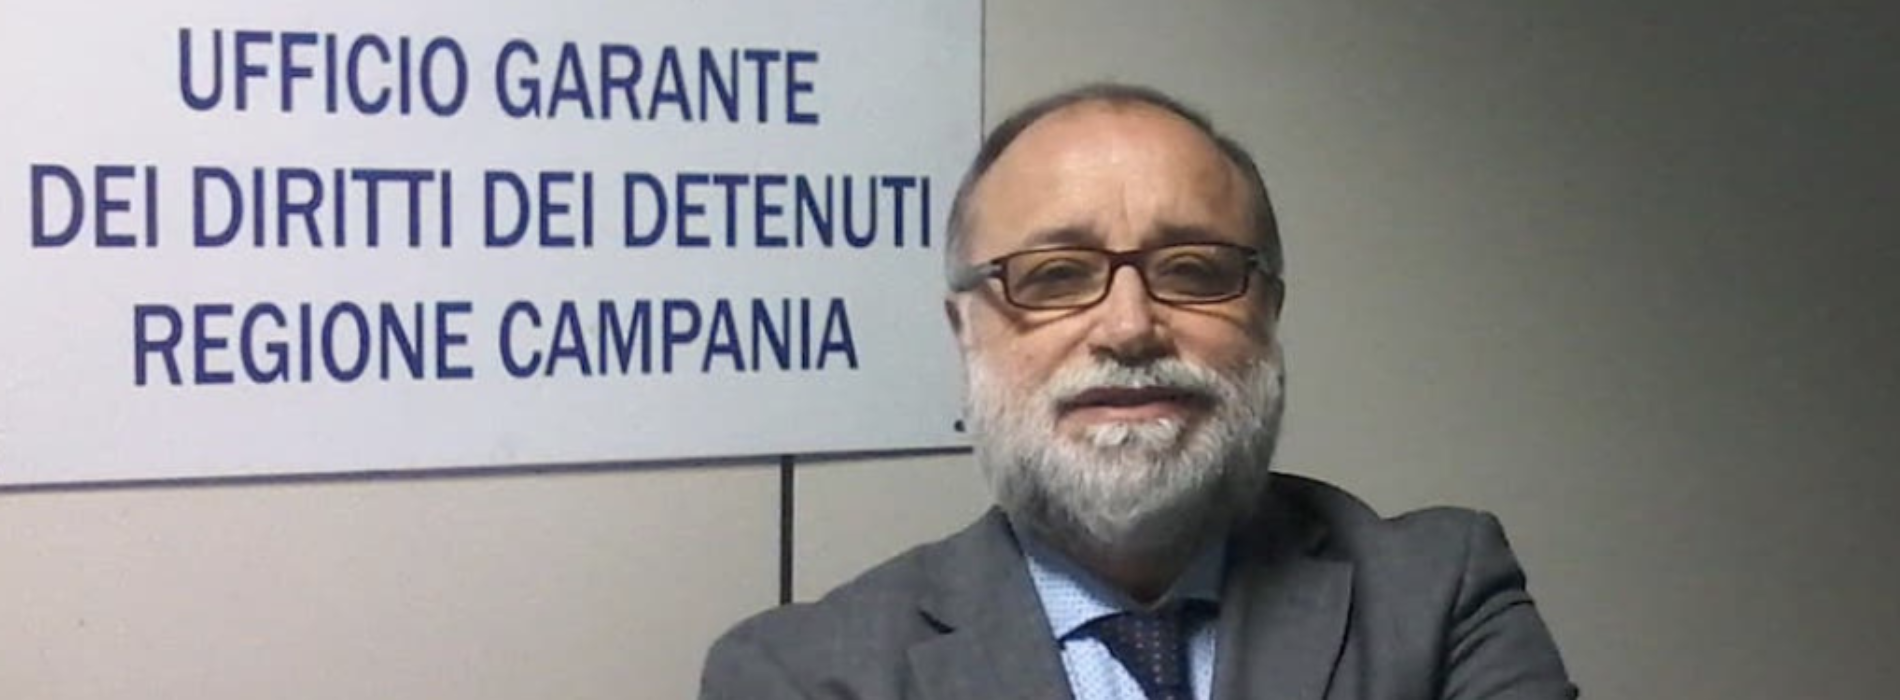 Garante detenuti, si presenta a Caserta la relazione annuale